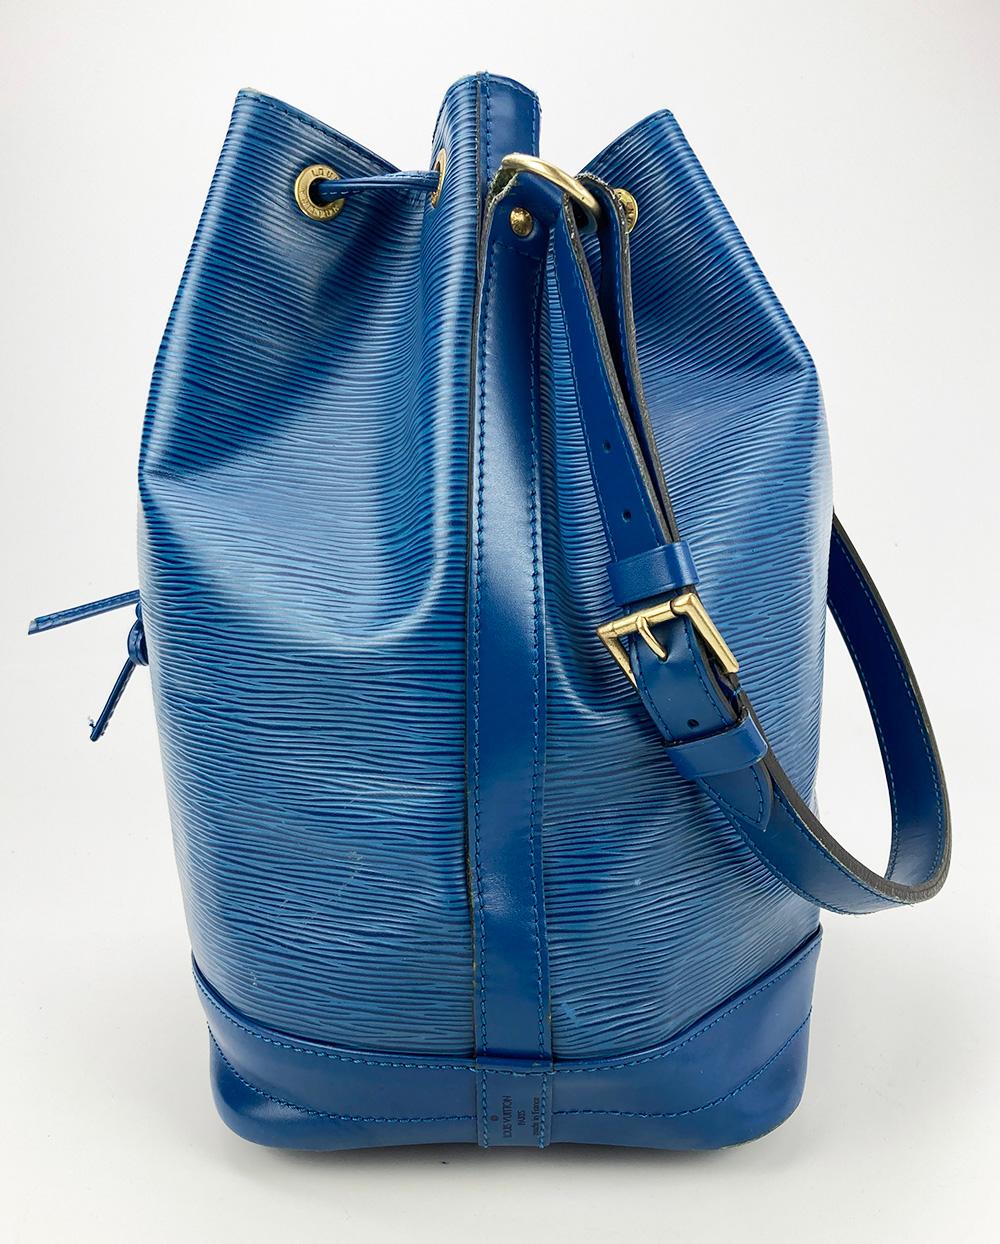 Louis Vuitton Blau Toldeo Epi Noe Drawstring Bucket Bag in gutem Zustand. Blaues Epi-Leder außen mit goldenen Messingbeschlägen und Glattleder besetzt. Top Kordelzugverschluss öffnet sich zu einem blauen Wildleder Interieur. Schrammen an den unteren